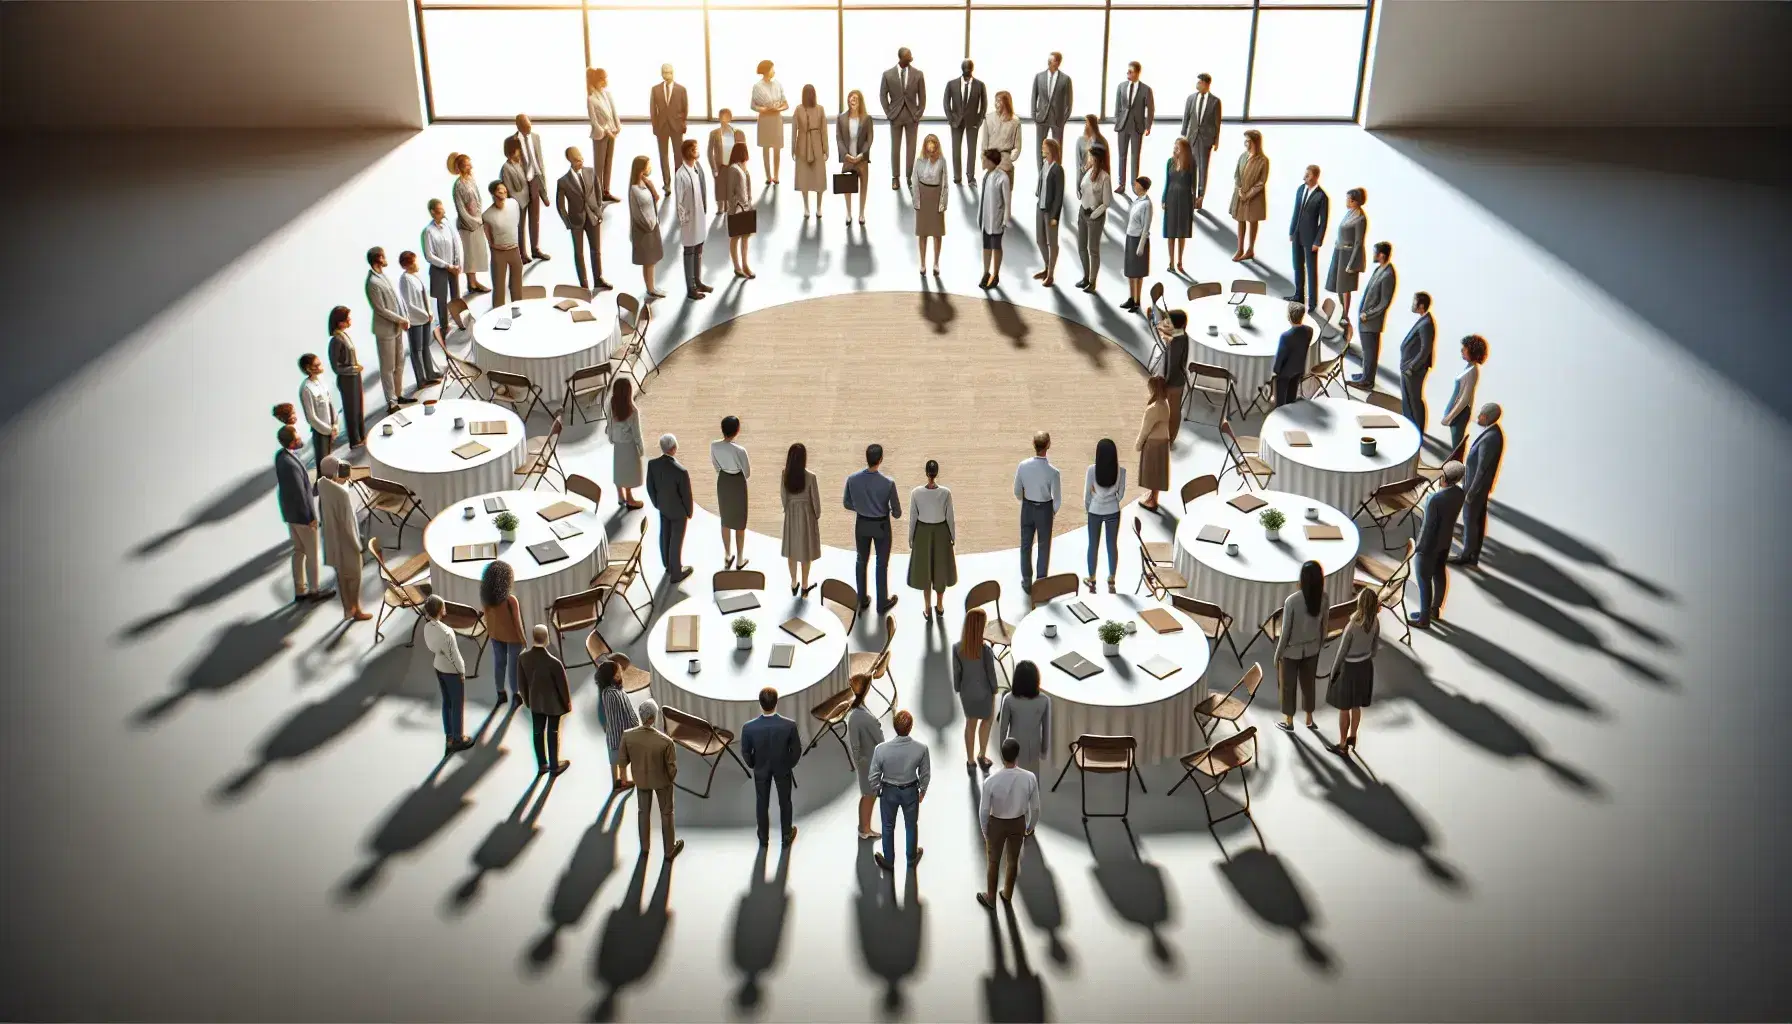 Grupo diverso de profesionales en semicírculo en un taller, con mesas redondas y sillas al fondo, ambiente de colaboración.